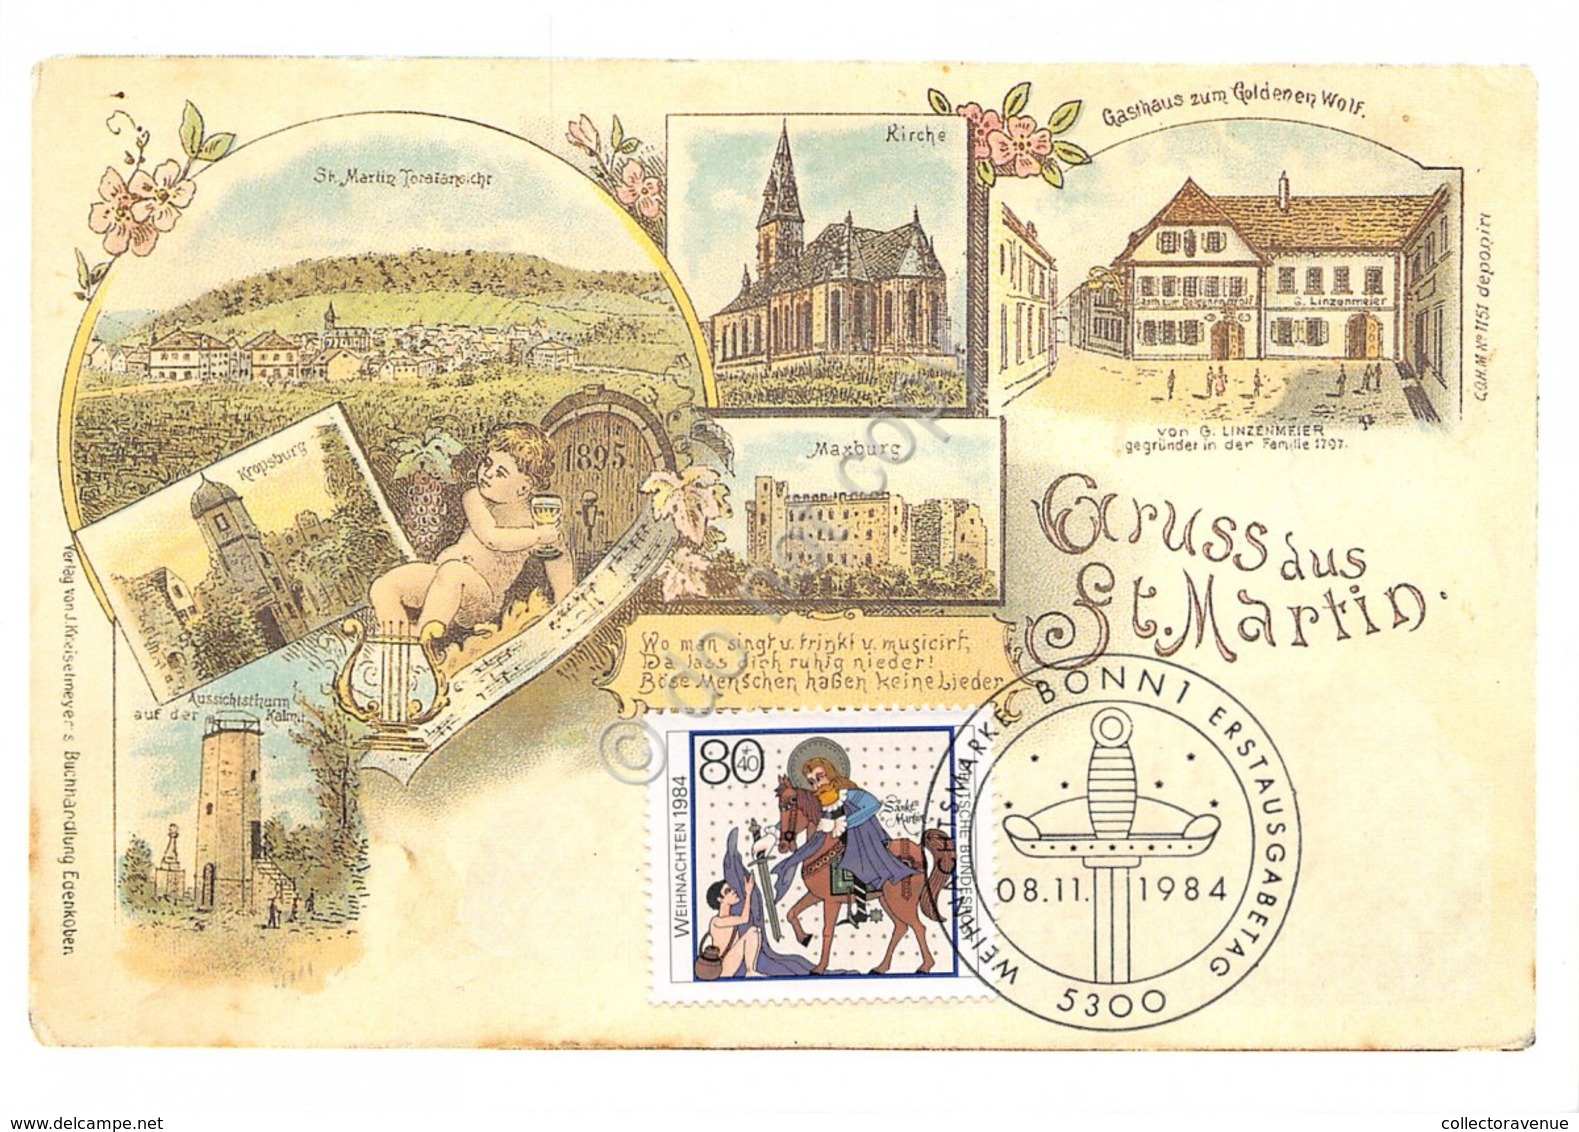 Cartolina Filatelica Gruss Aus St Martin 1984 - Non Classificati